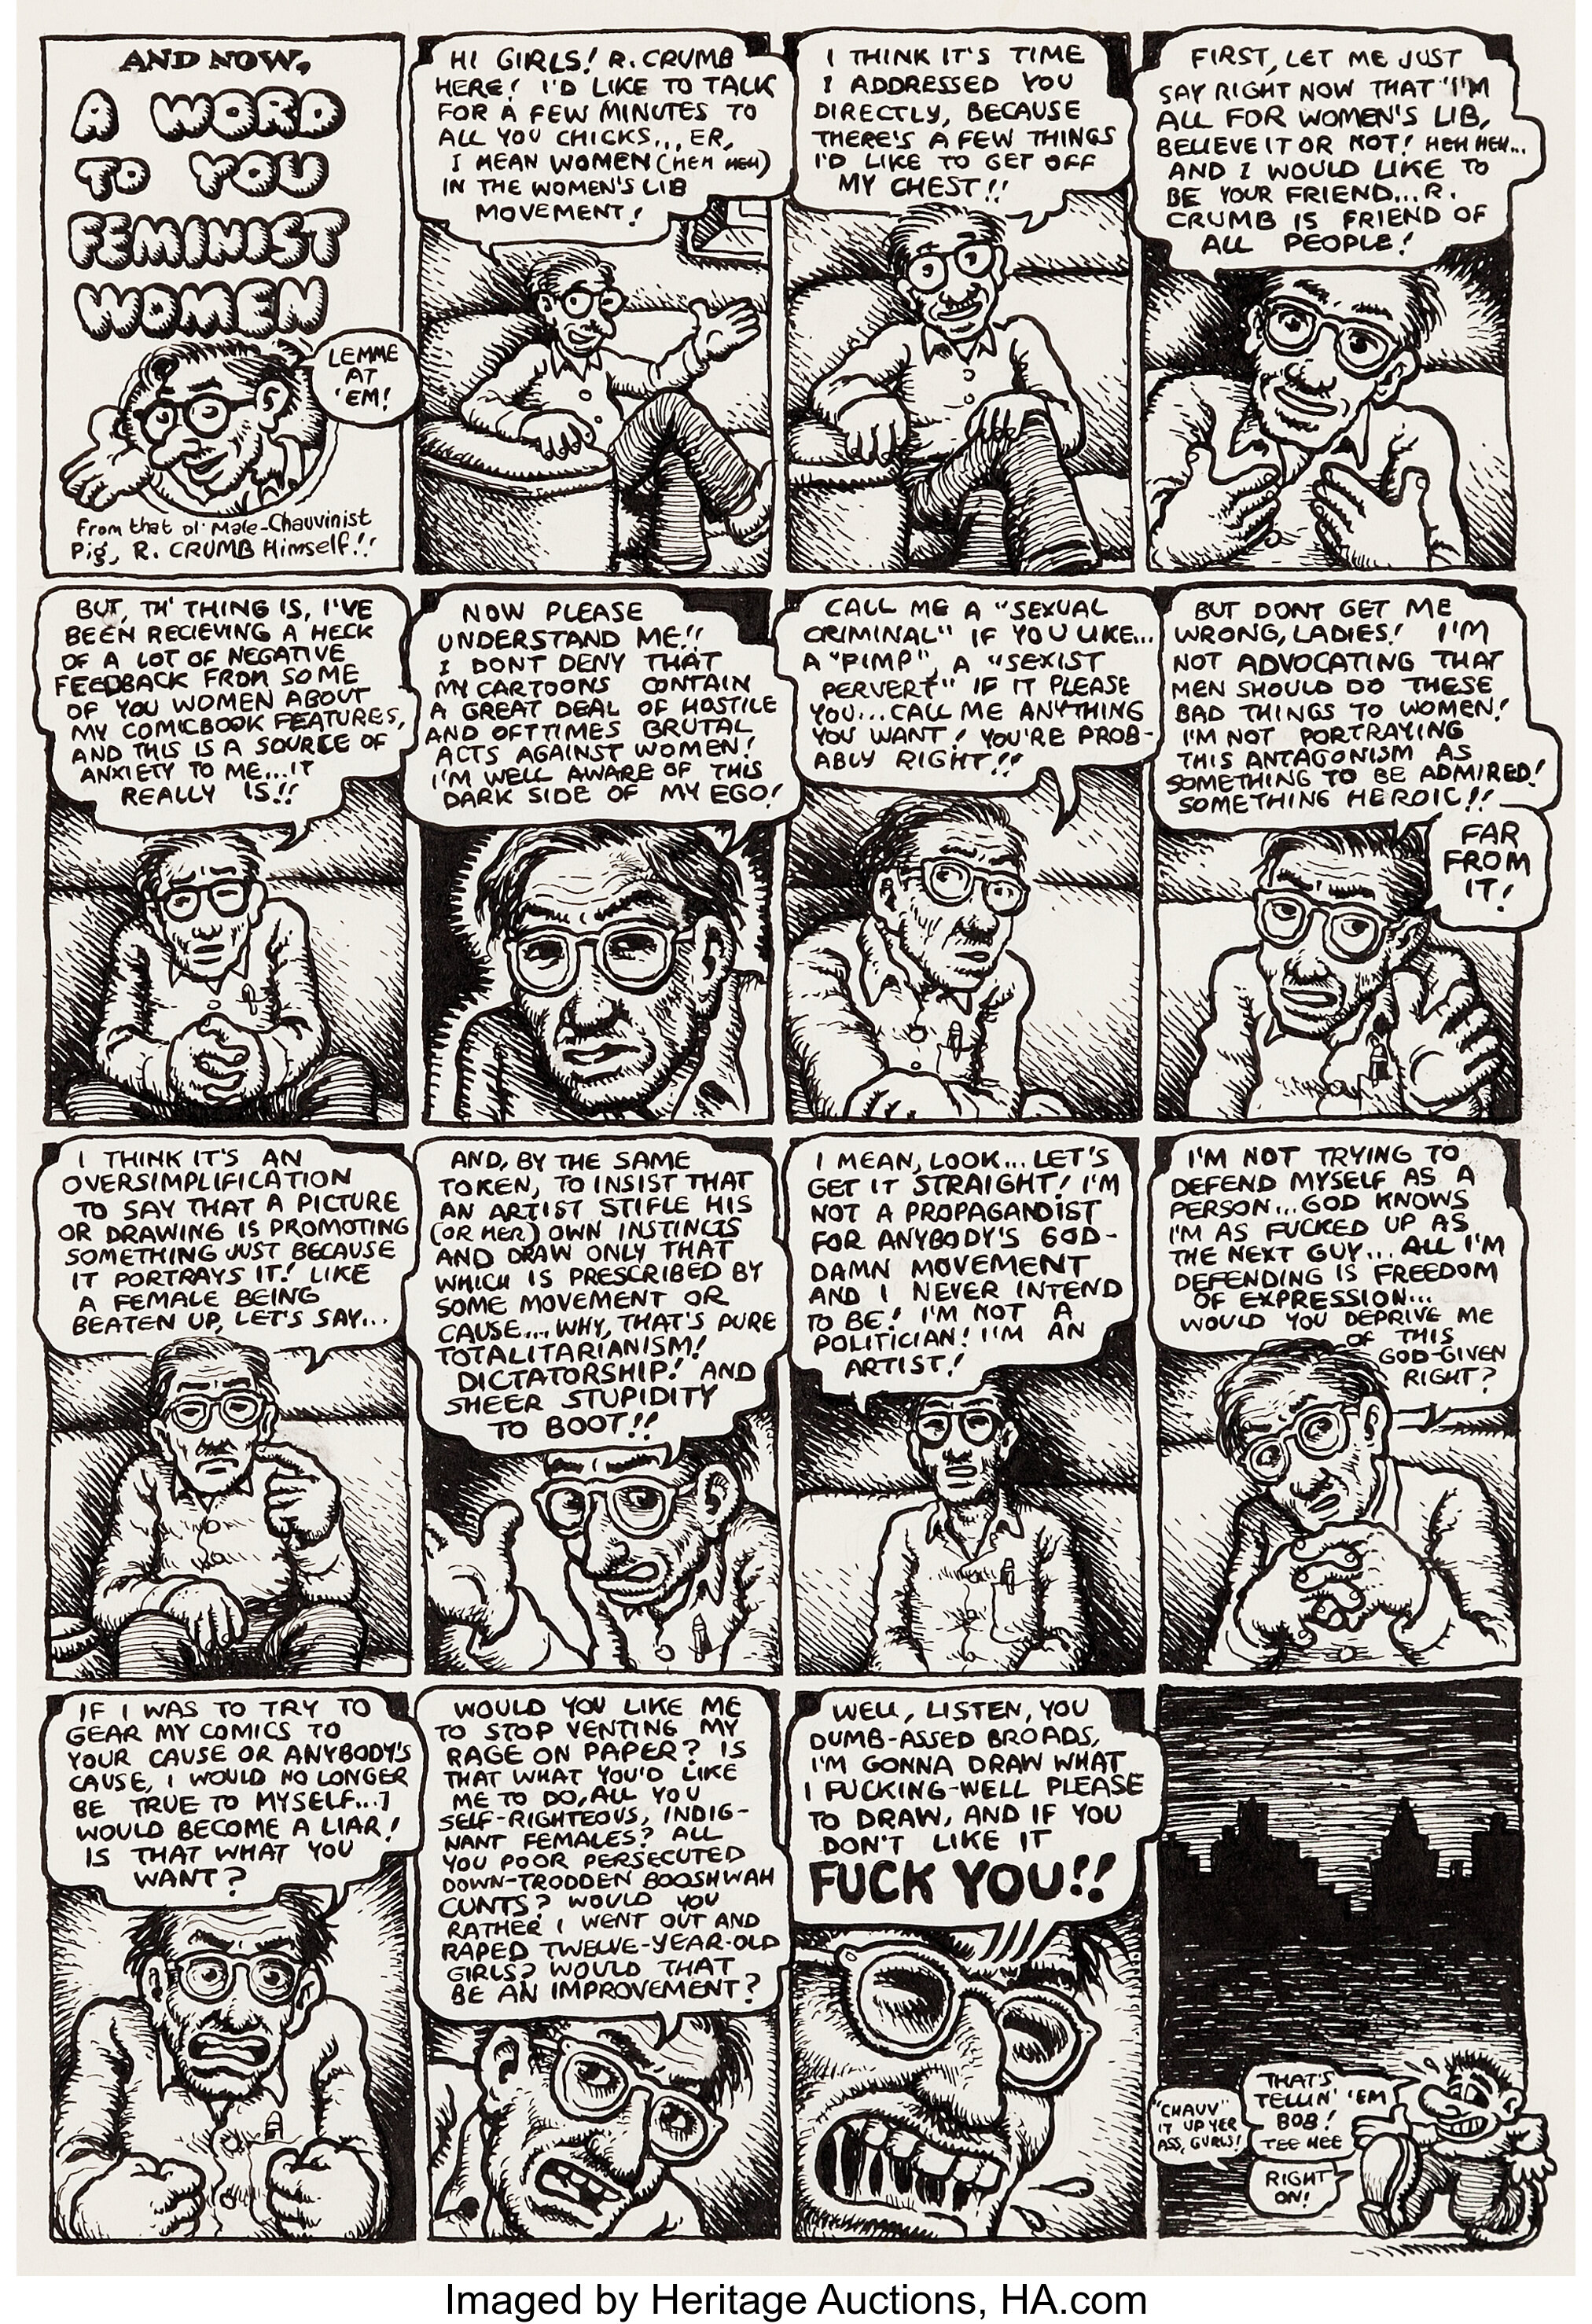 Robert Crumb Big Ass Comics 2 1 Page Story Original Art